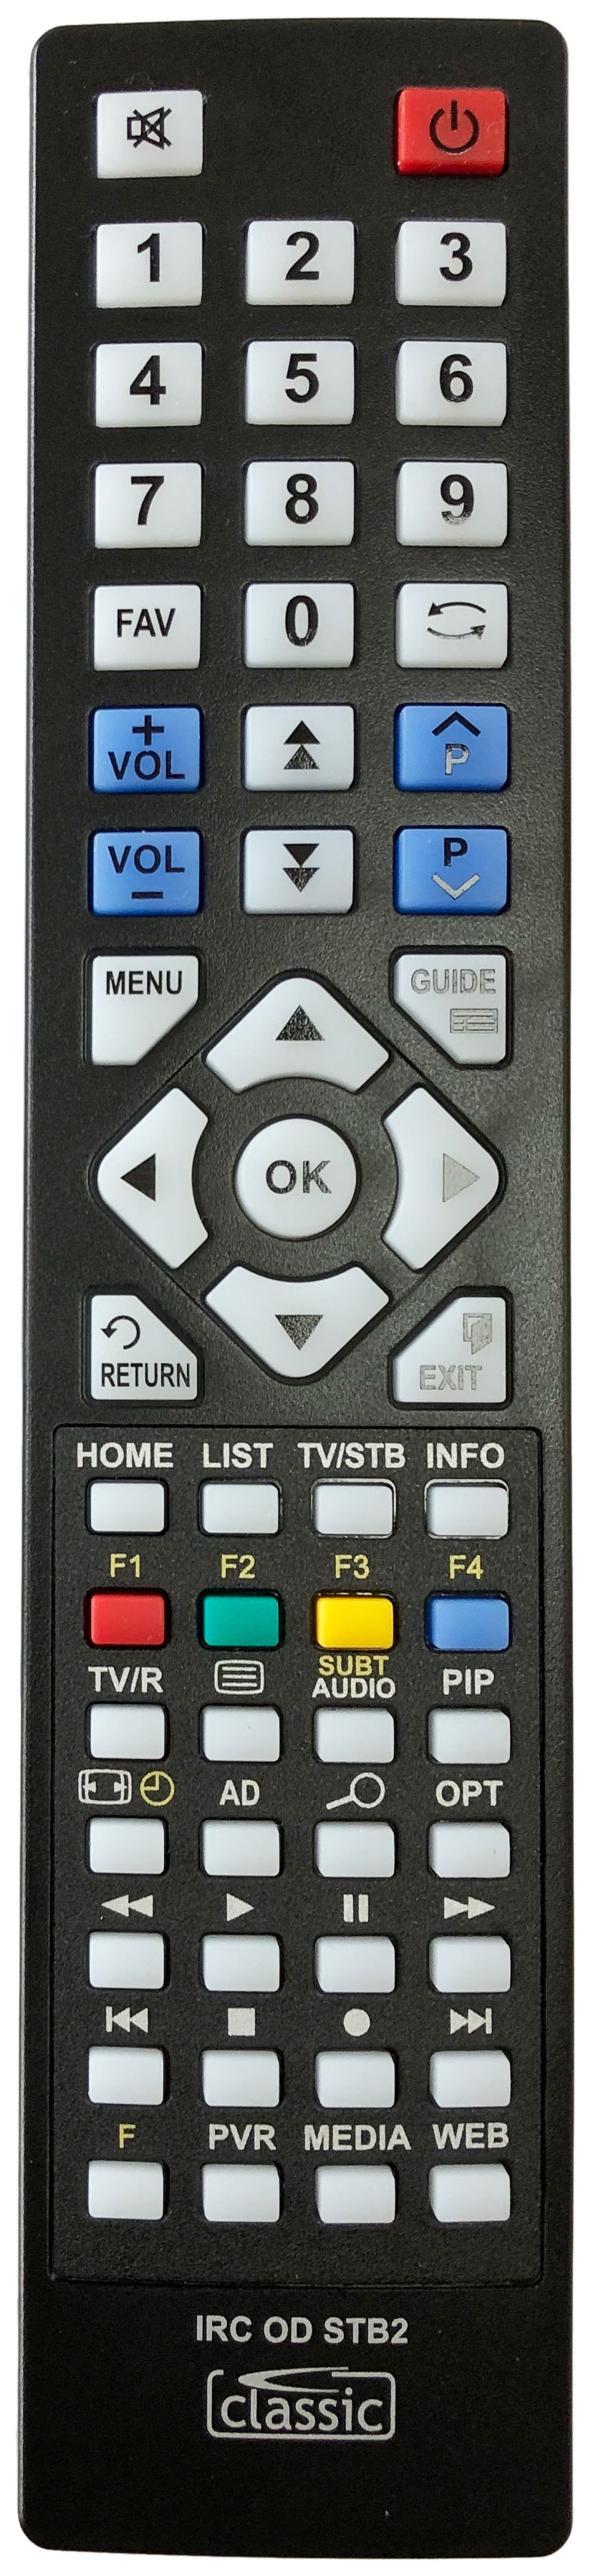 TECHWOOD DVB665 Remote Control Alternative